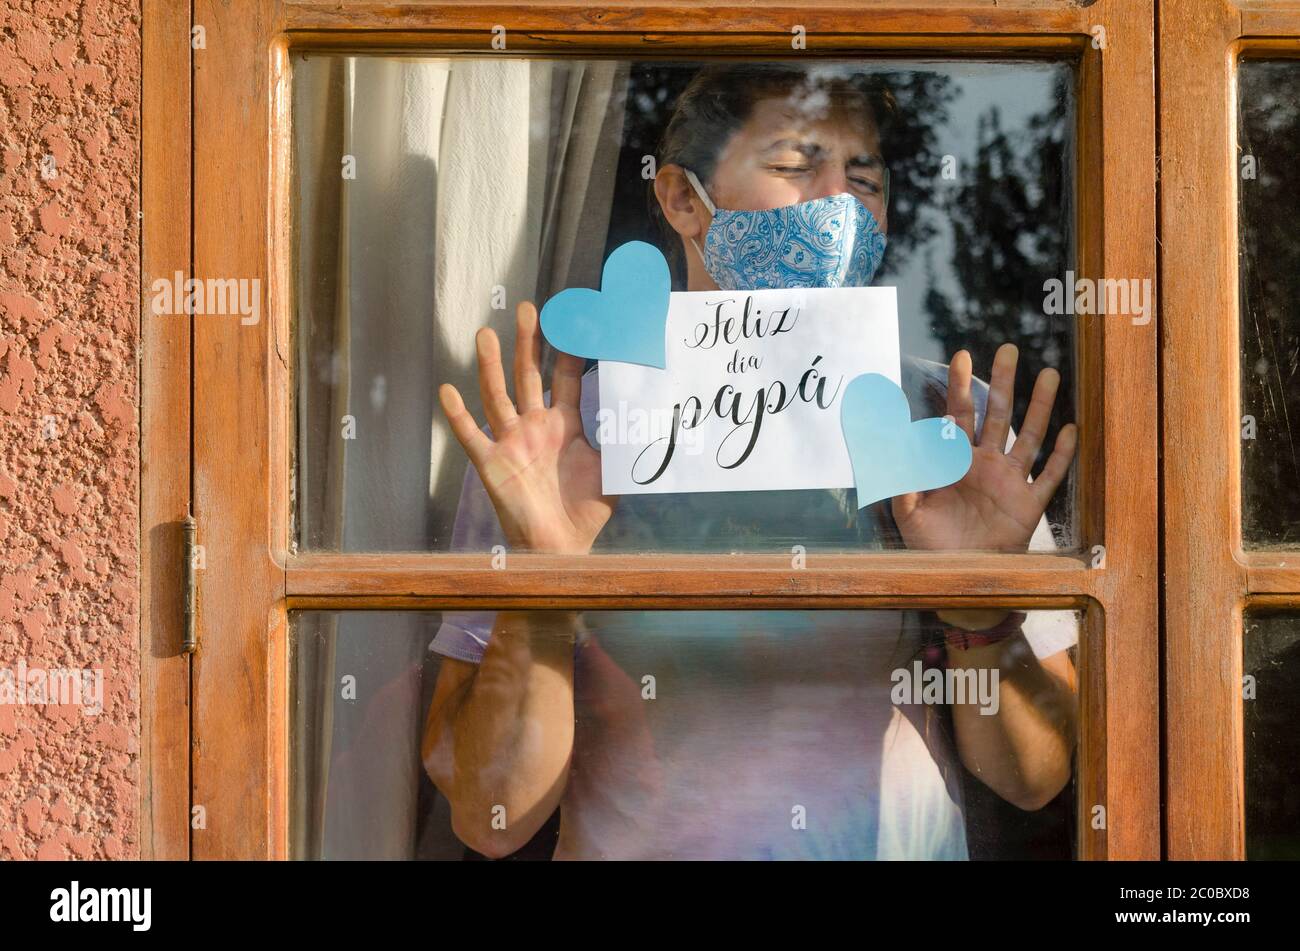 Junge Frau mit Gesichtsmaske zu Hause, die ein Blatt Papier durch das Fenster hält, das auf spanisch sagt: 'Glücklicher Tag, Papa!' Stockfoto